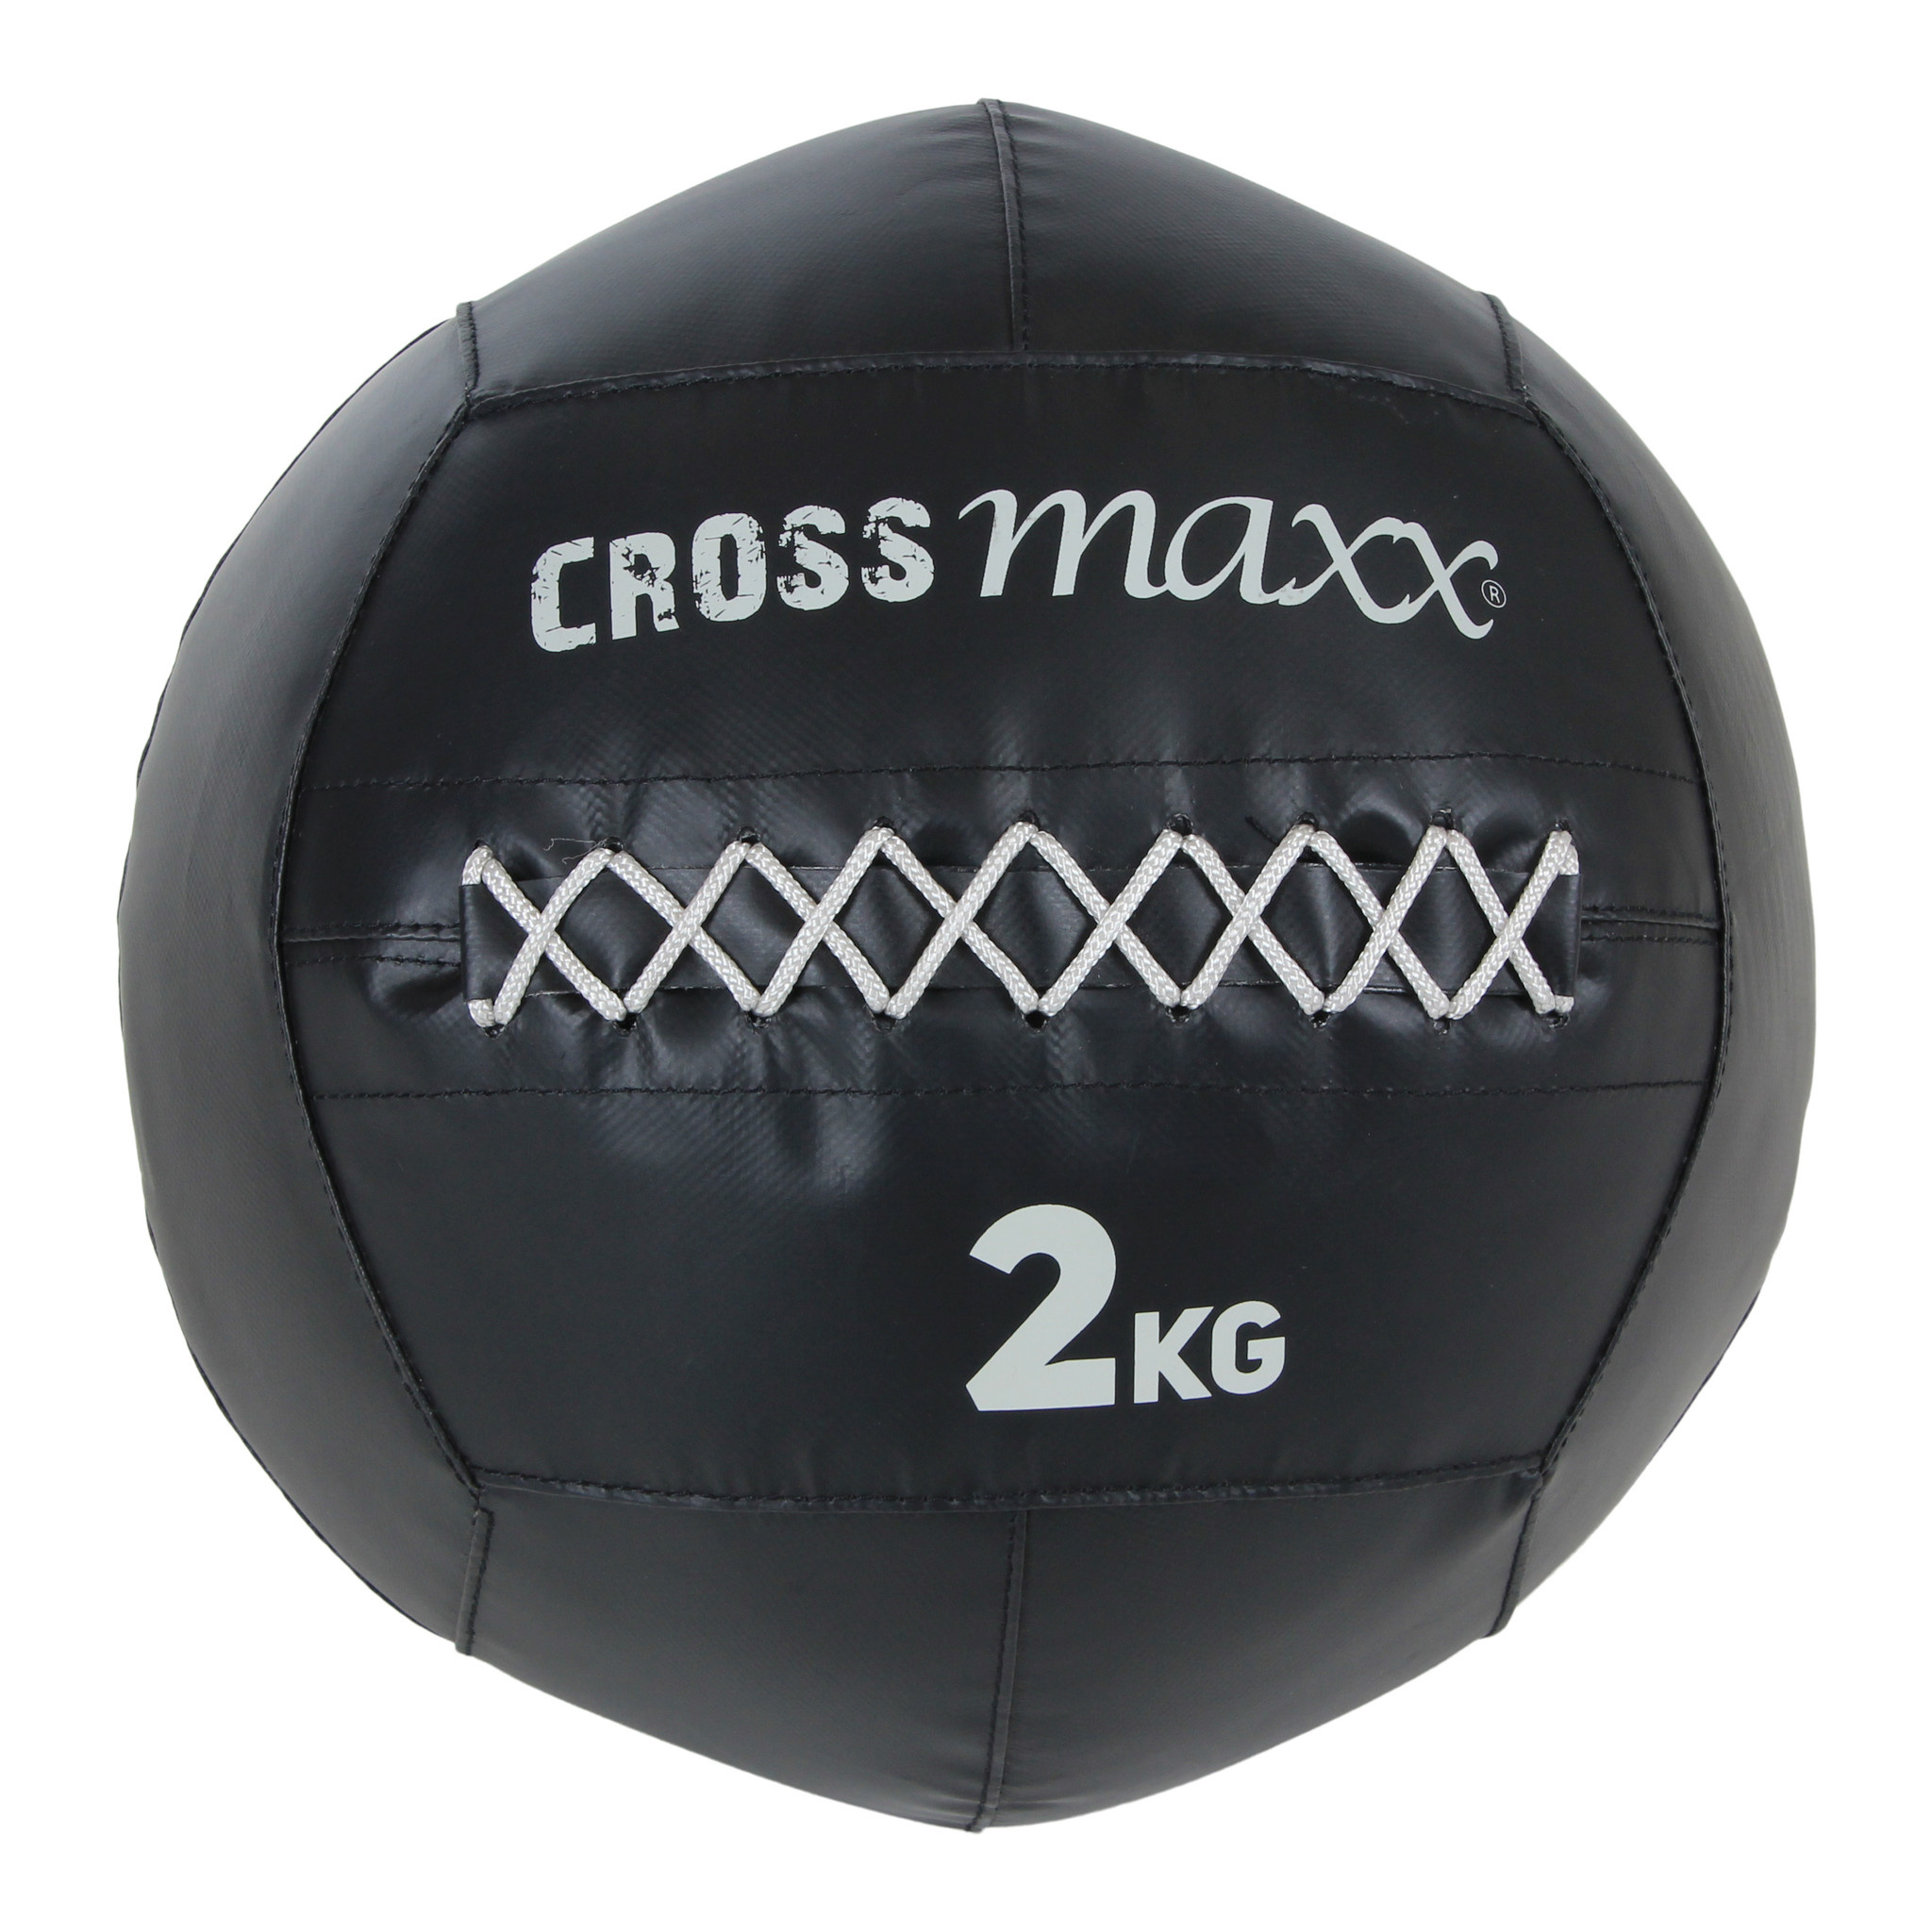 Crossmaxx LMX1244 Pro Wall Ball 2 12 kg